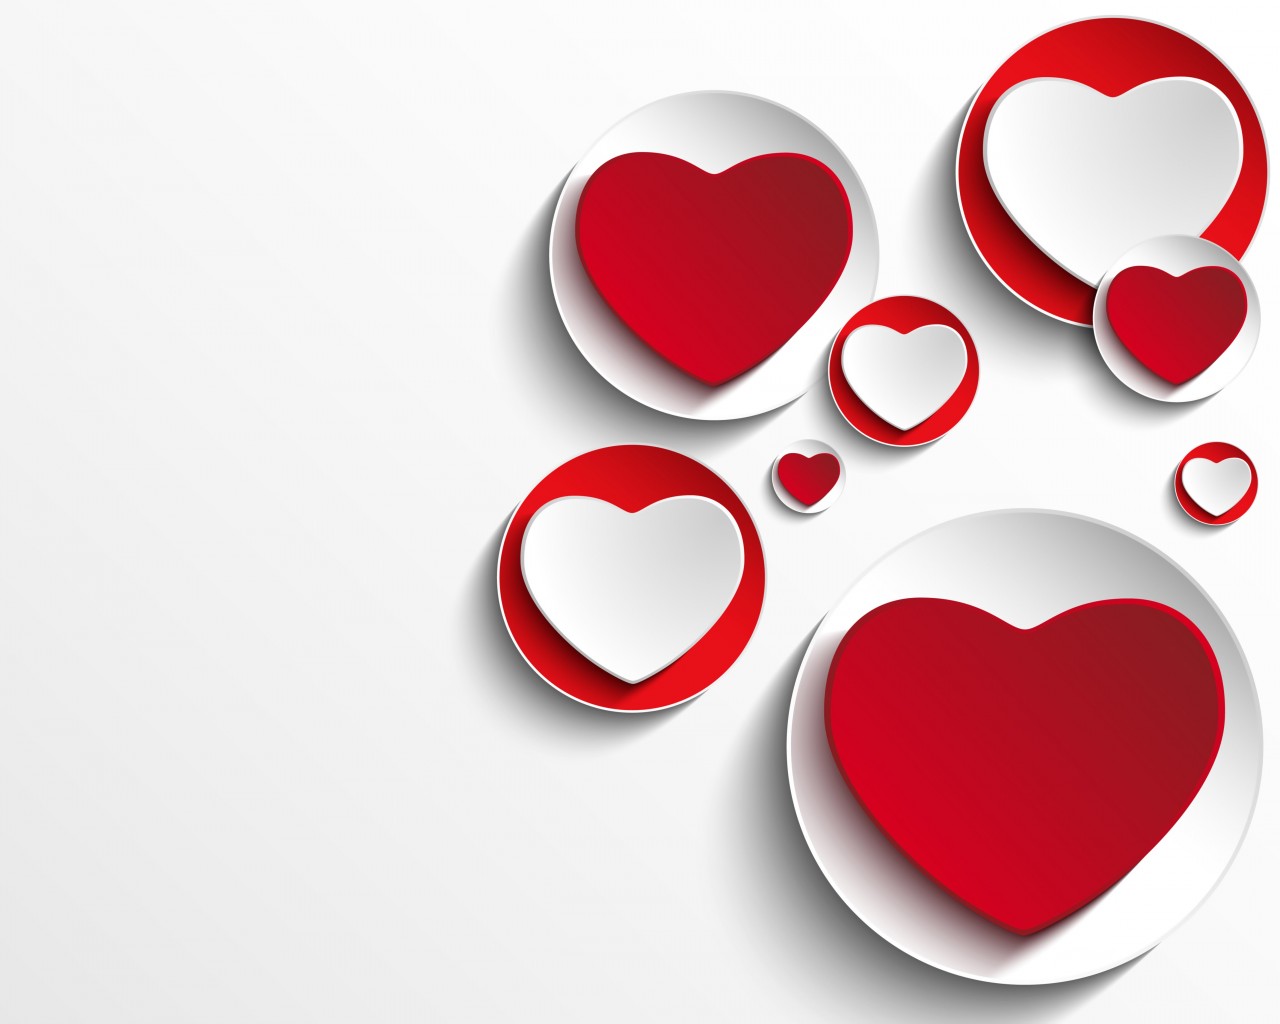 Minimalistic Hearts Shapes Wallpaper for Desktop 1280x1024